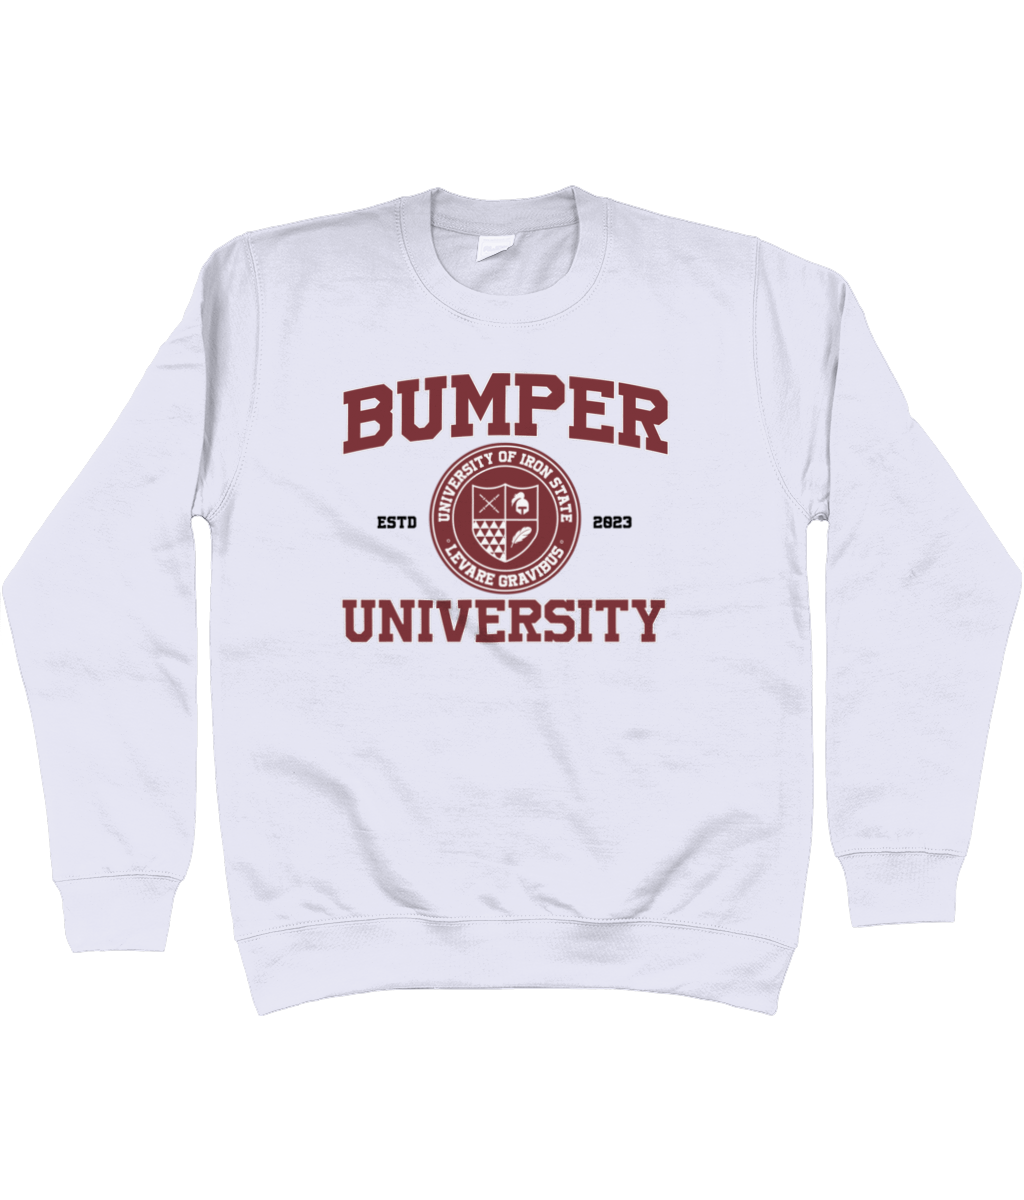 Bumper crest jumper - Bumper uni